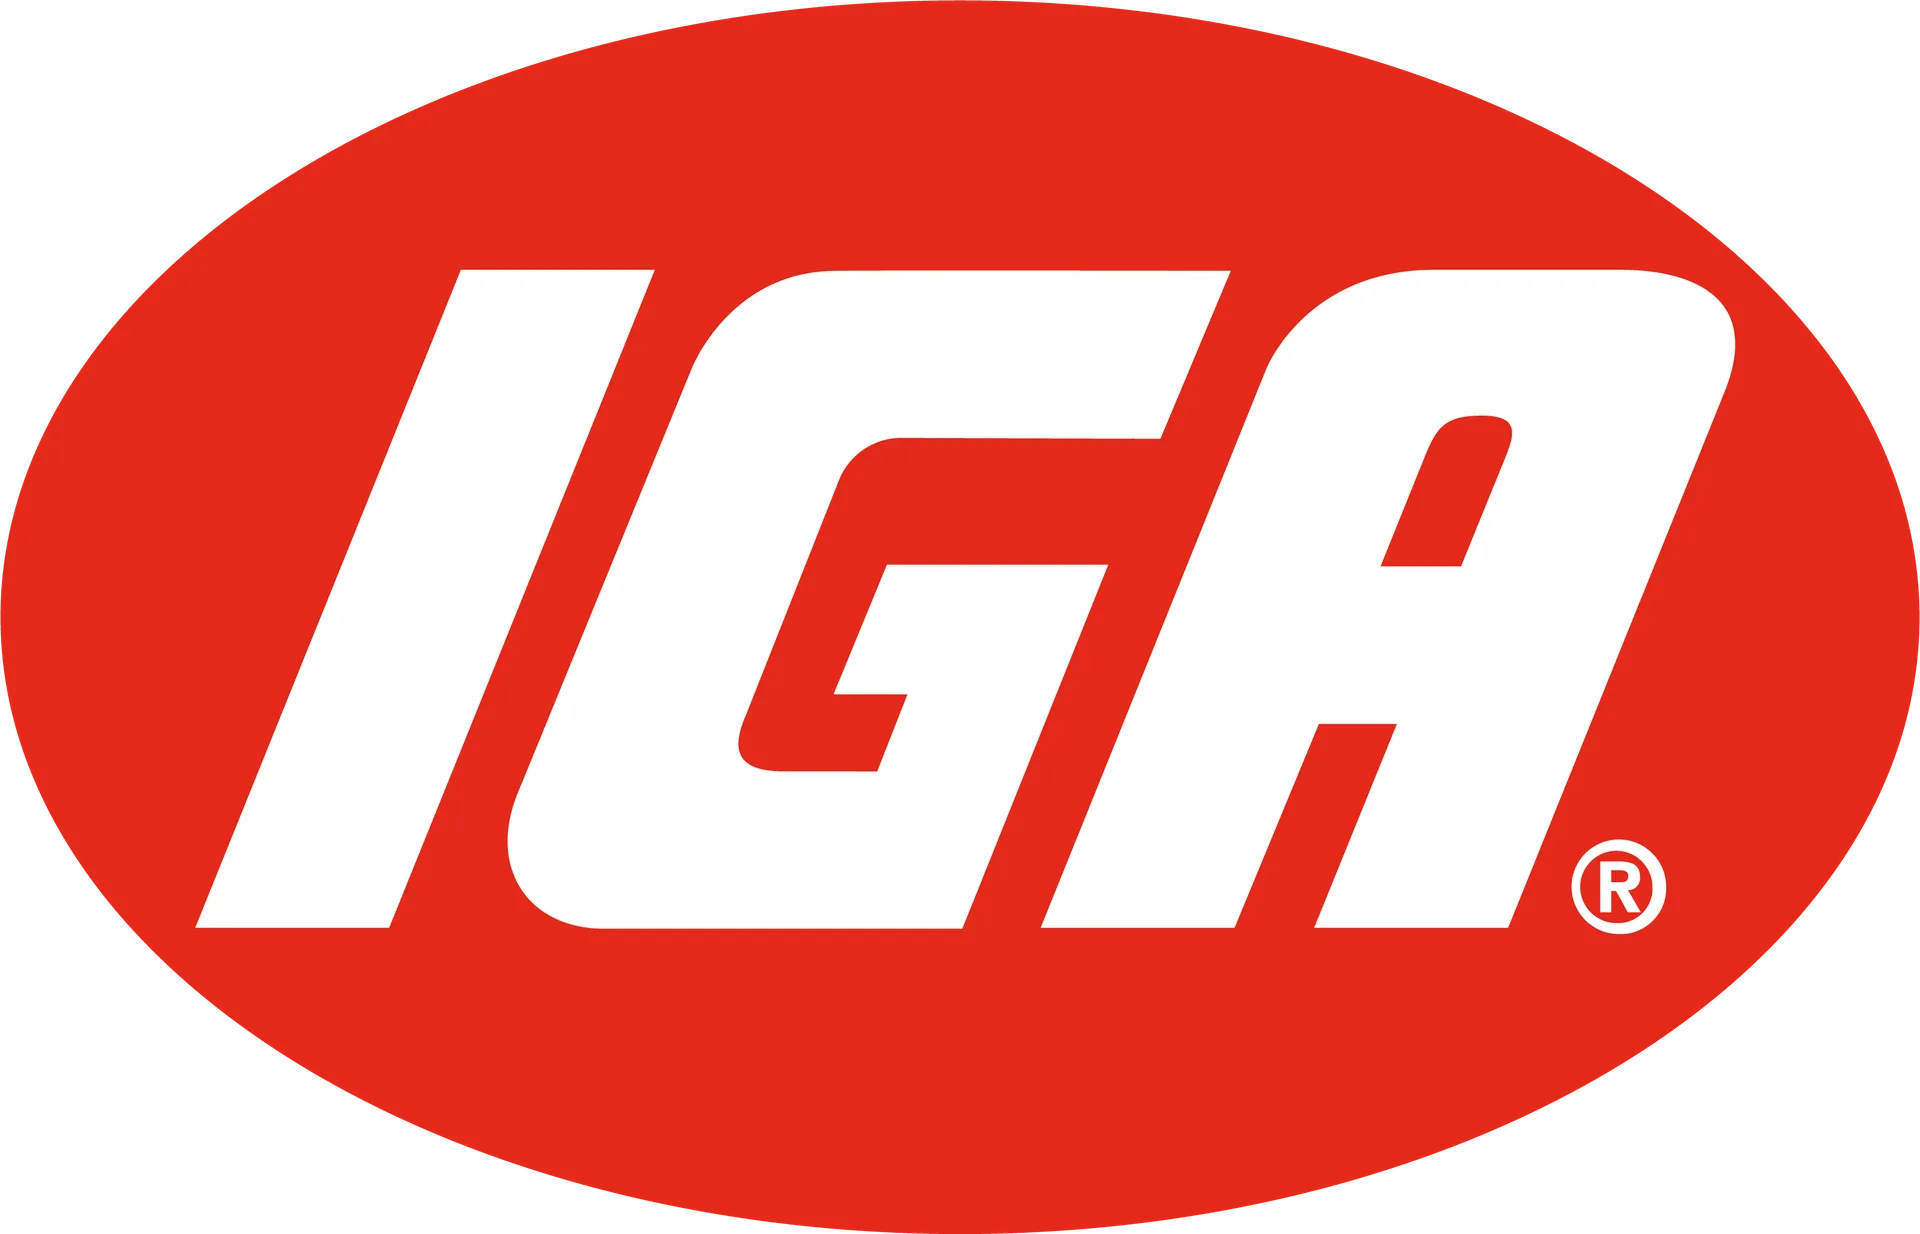 IGA XPRESS logo of current catalogue